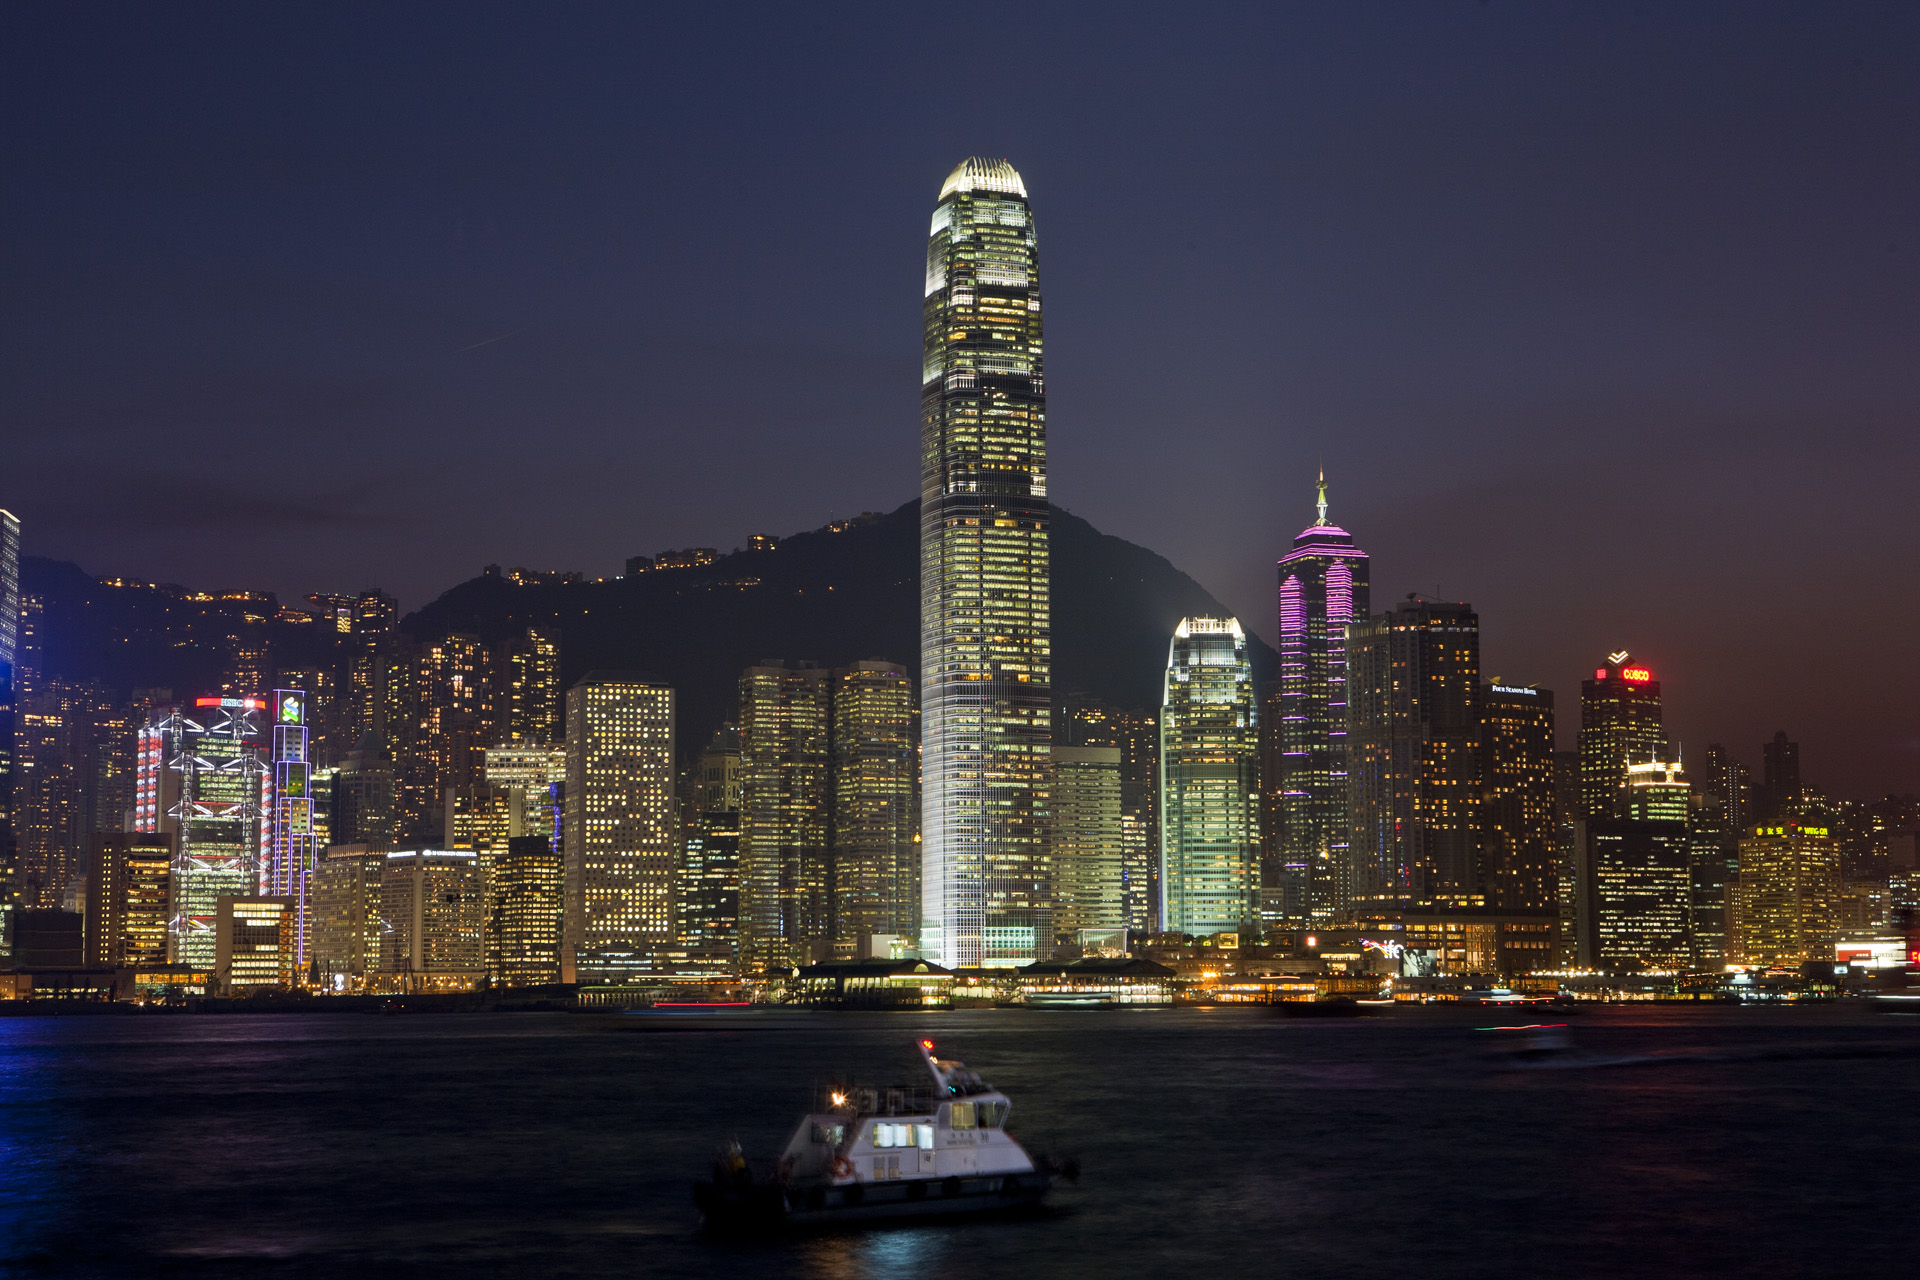 Hong Kong - pejzaż, fotografia podróżnicza, fotografia nocna